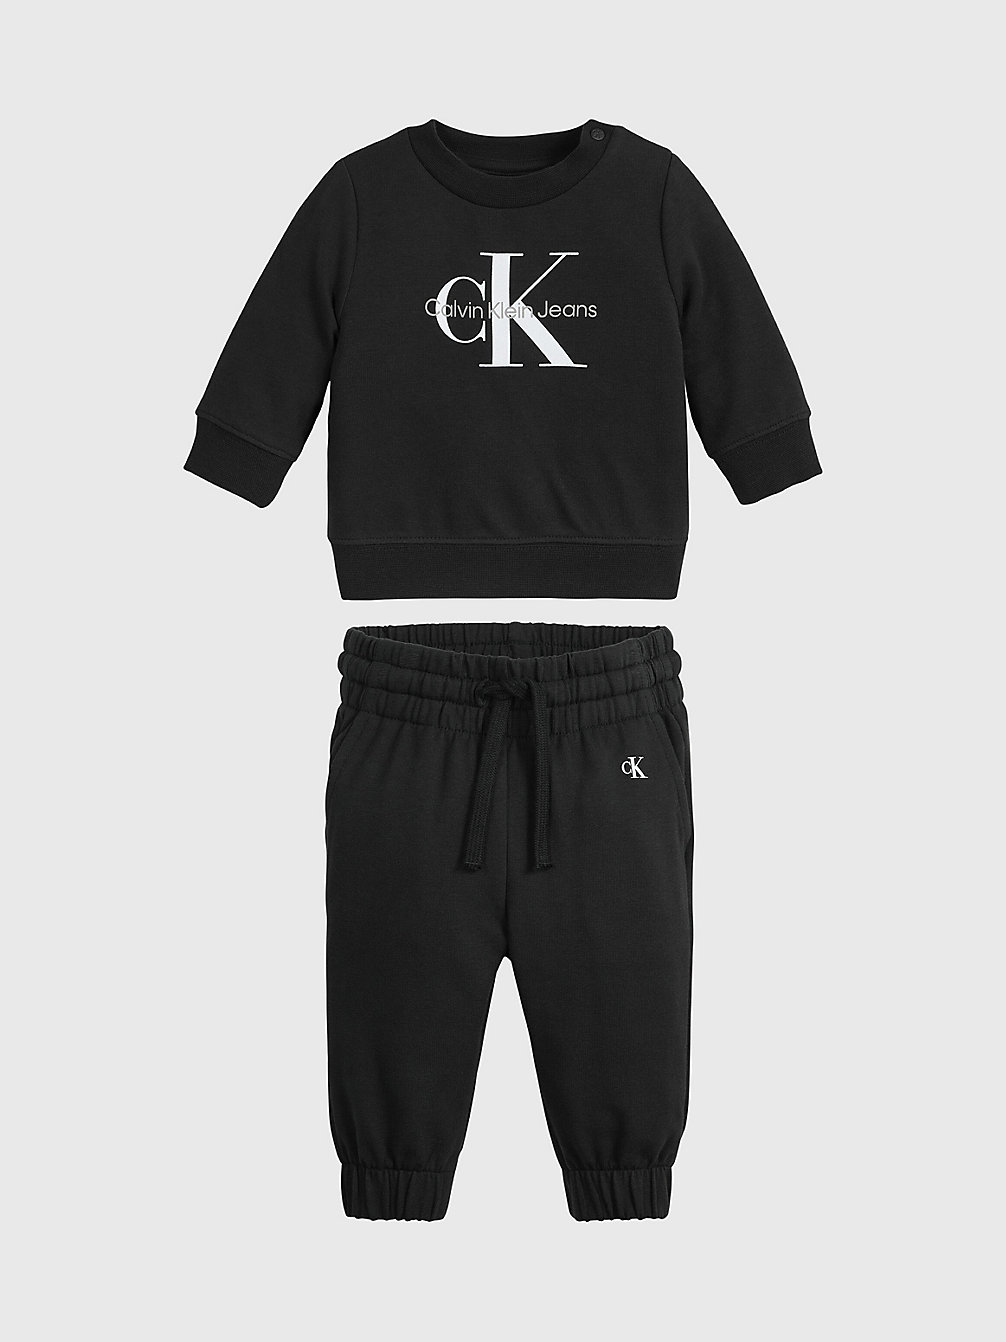 CK BLACK > Newborn Trainingspak Met Logo > undefined newborn - Calvin Klein